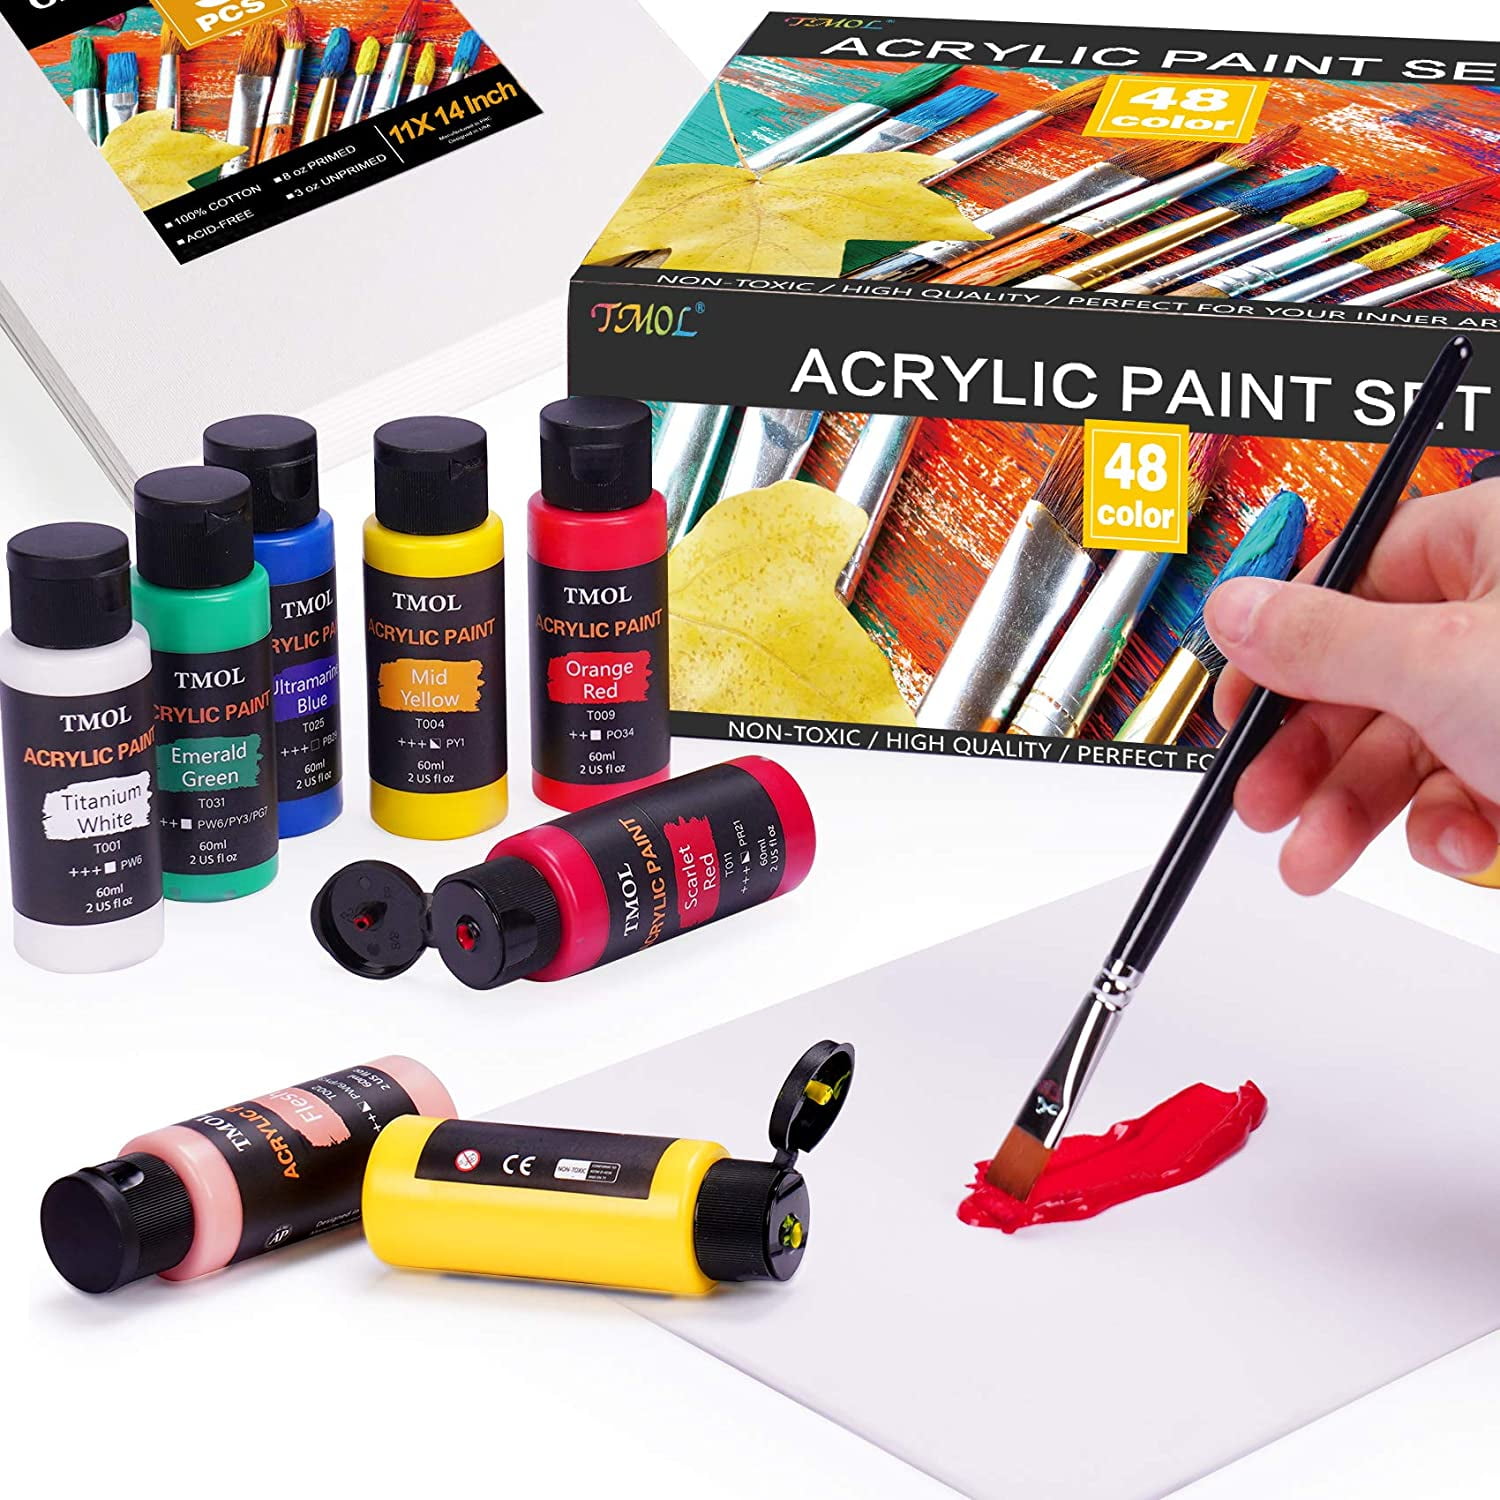 Acrylic Paint Sets, Sealant & Brushes (12 Pack)